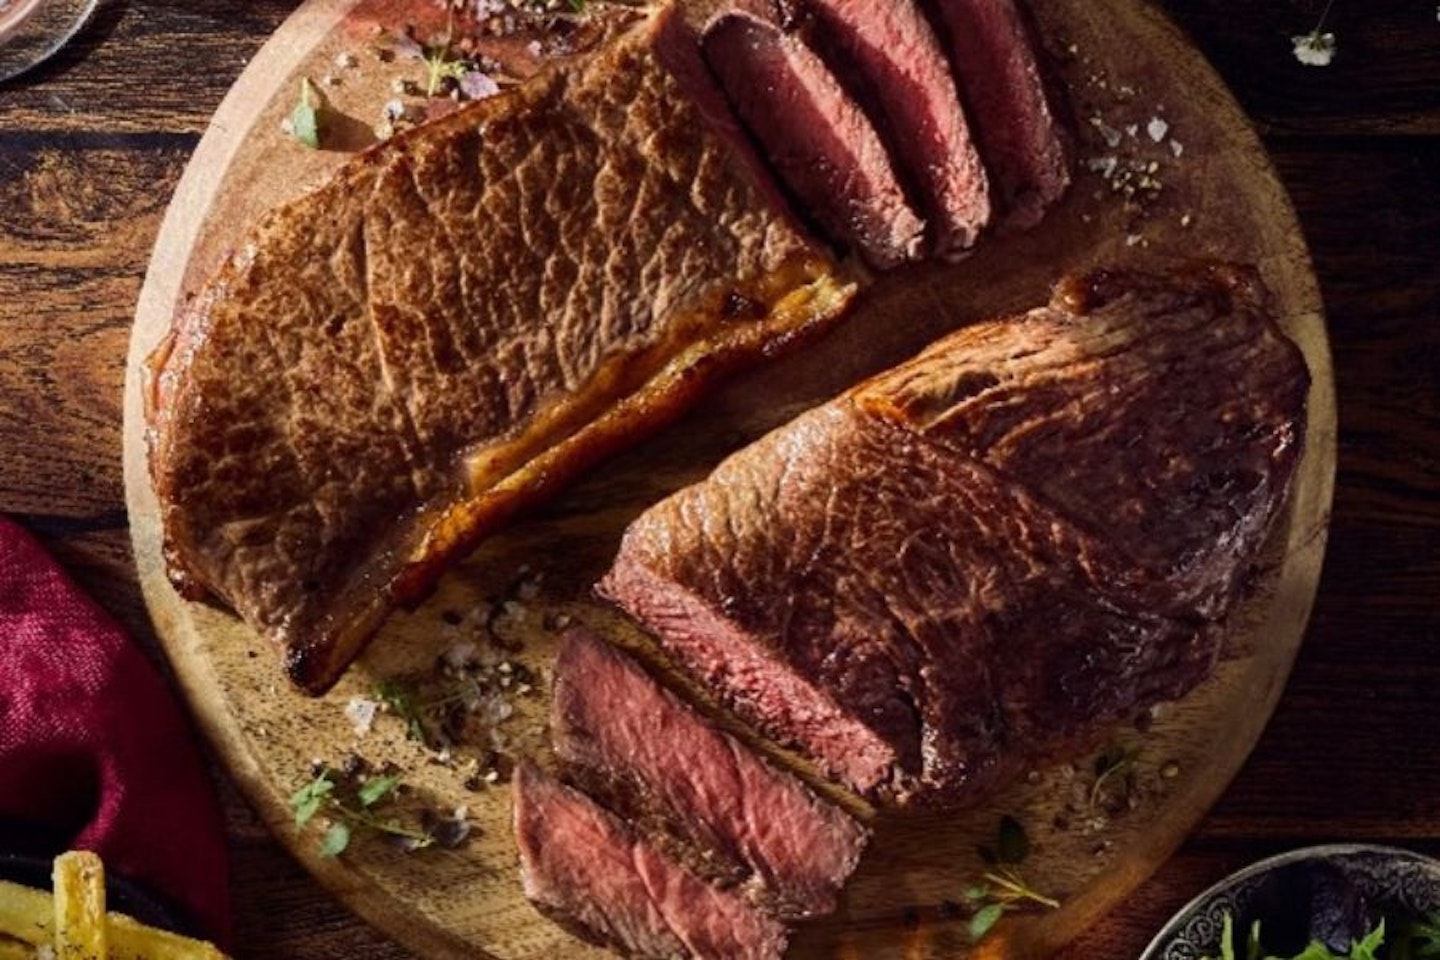 Iceland steak Valentine's Deal